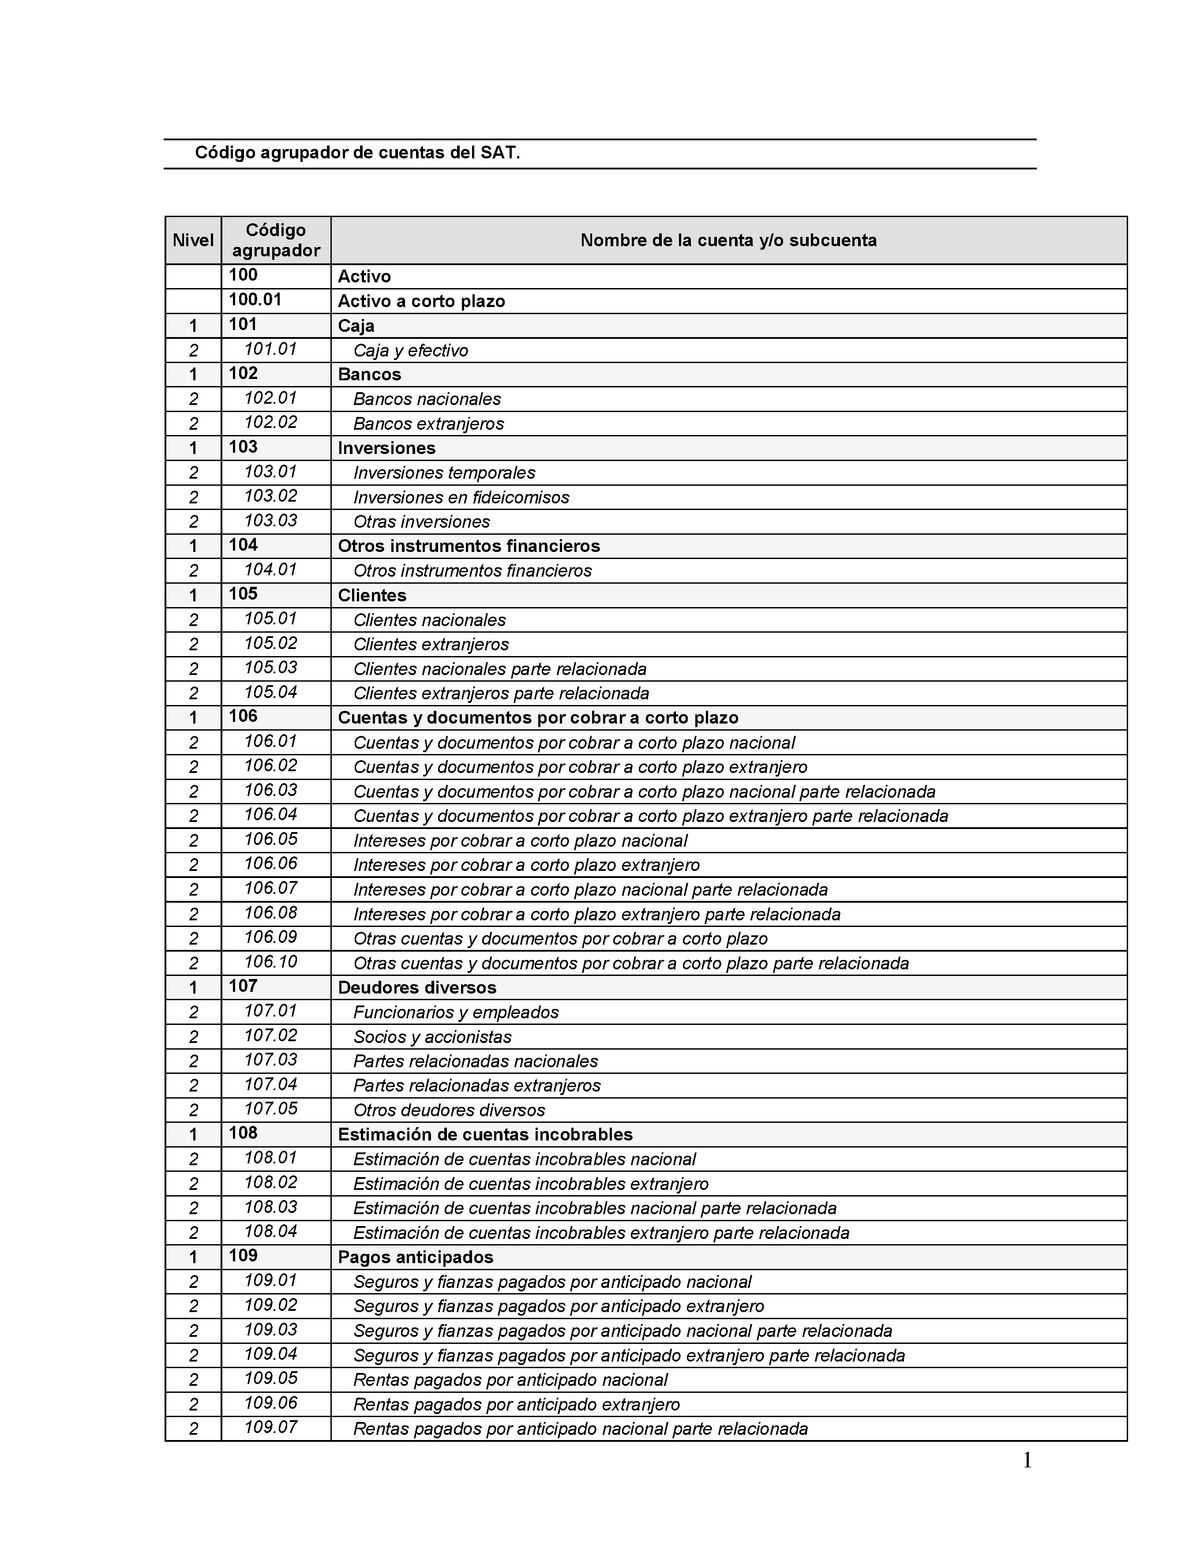 Catalogo Completo De Cuentas Del Sat En Pdf Código Agrupador De